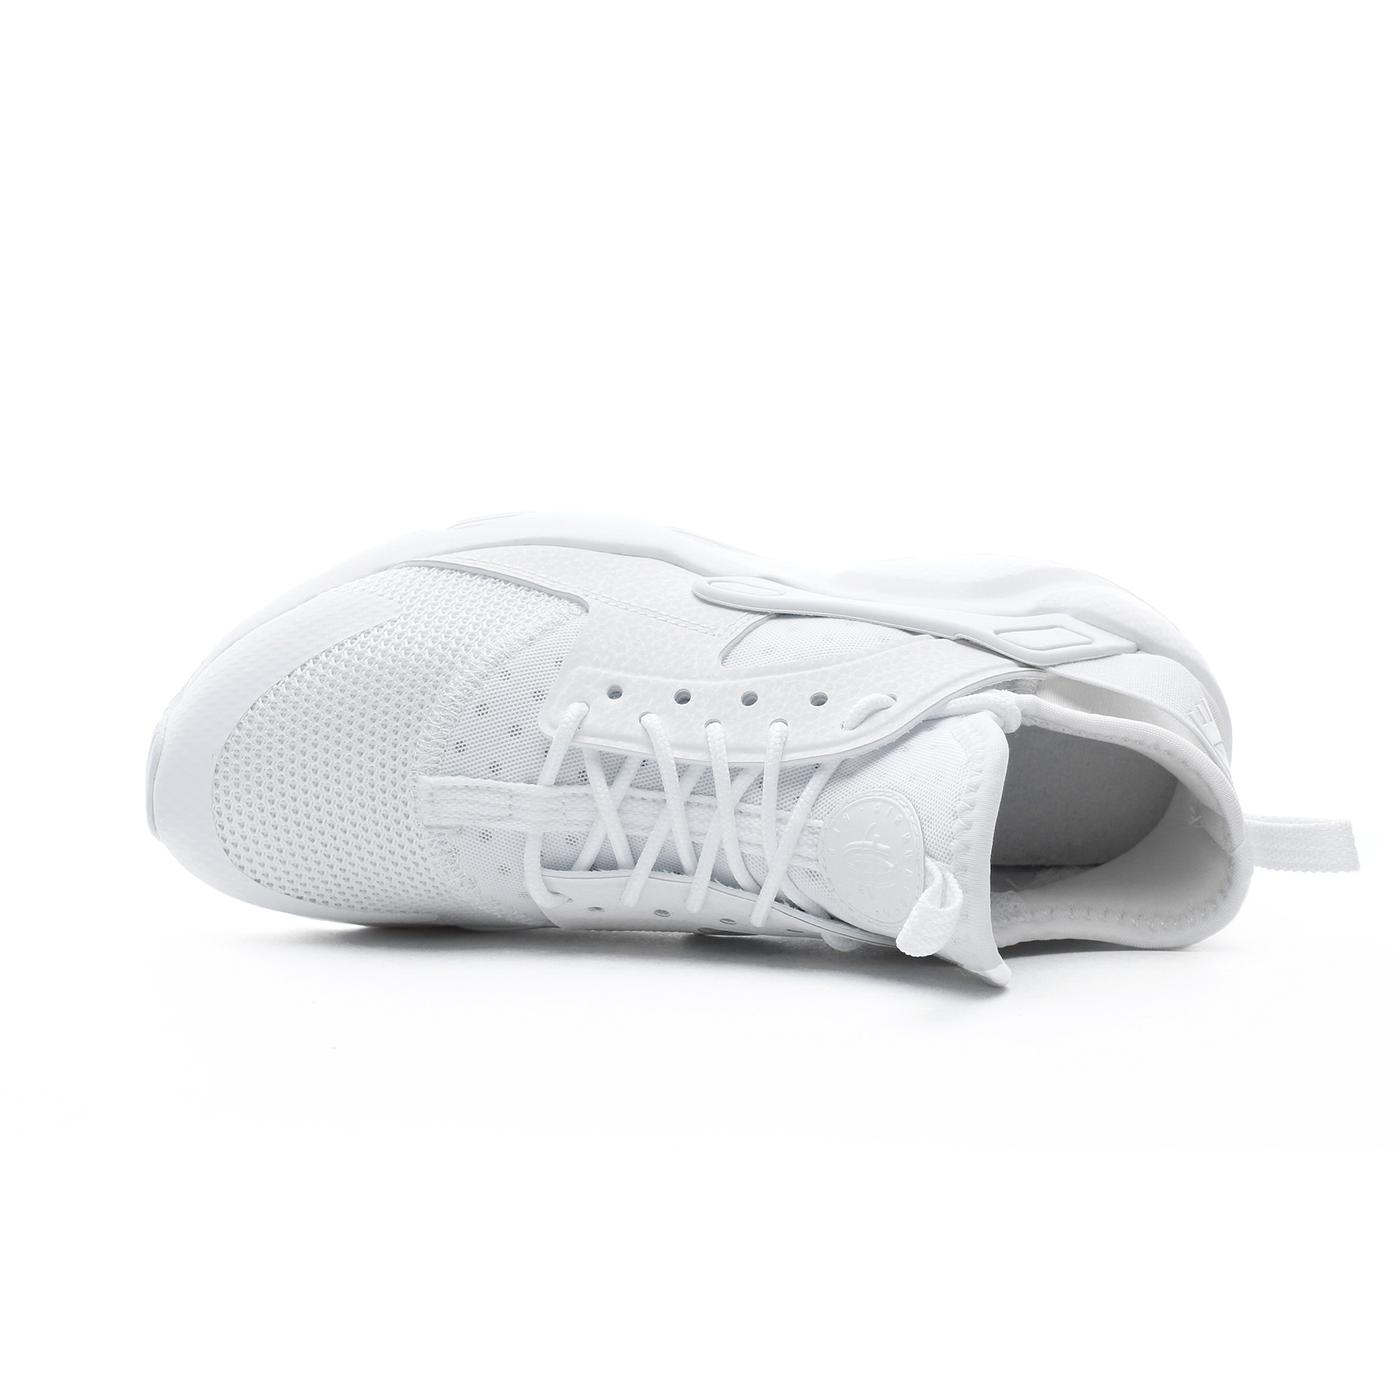 Nike Air Huarache Ultra Kadın Beyaz Spor Ayakkabı